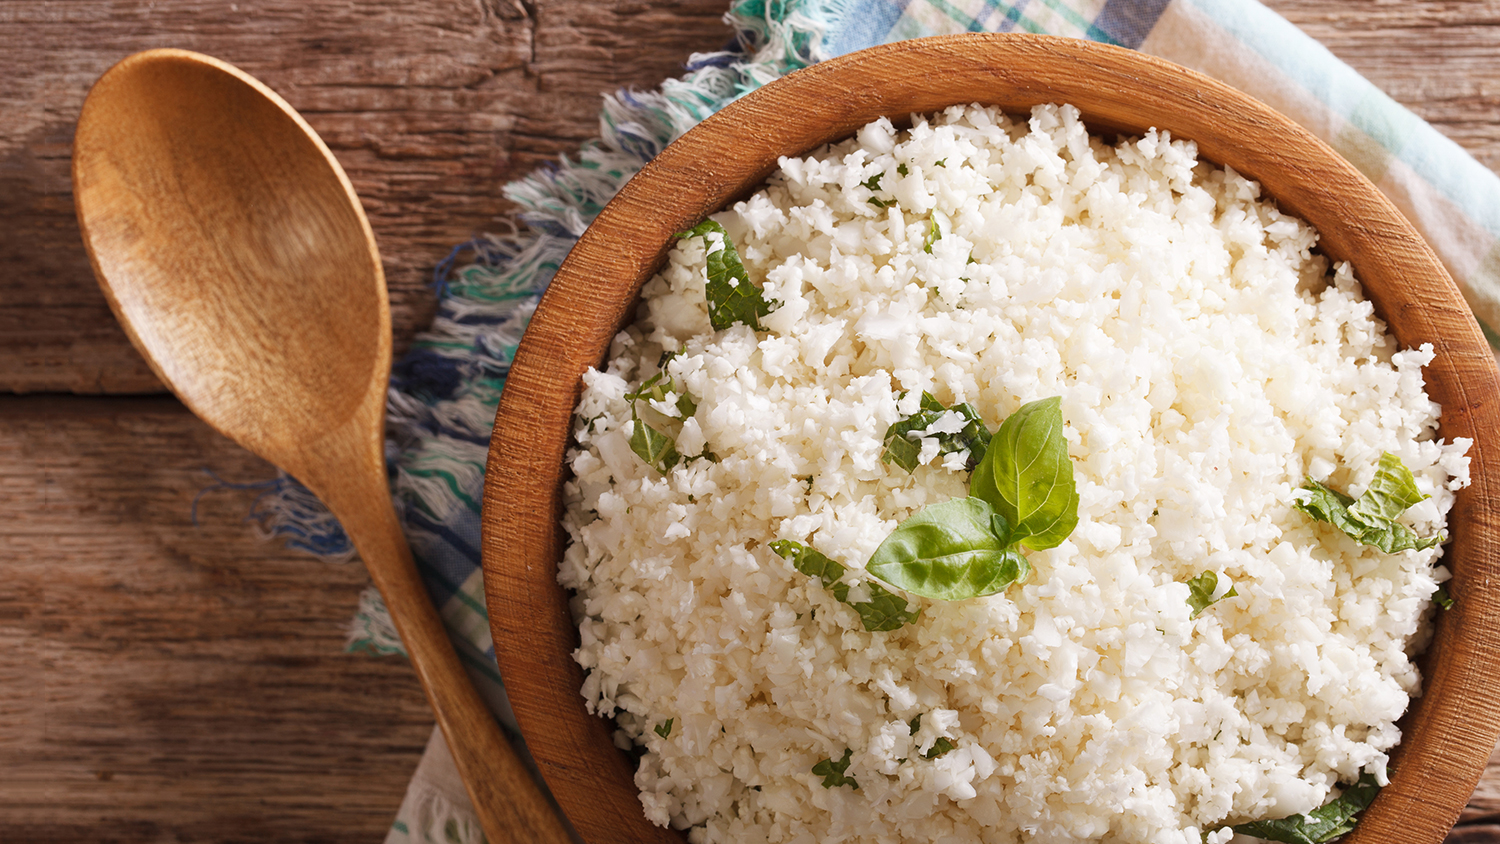 cauliflower Rice instead of white rice